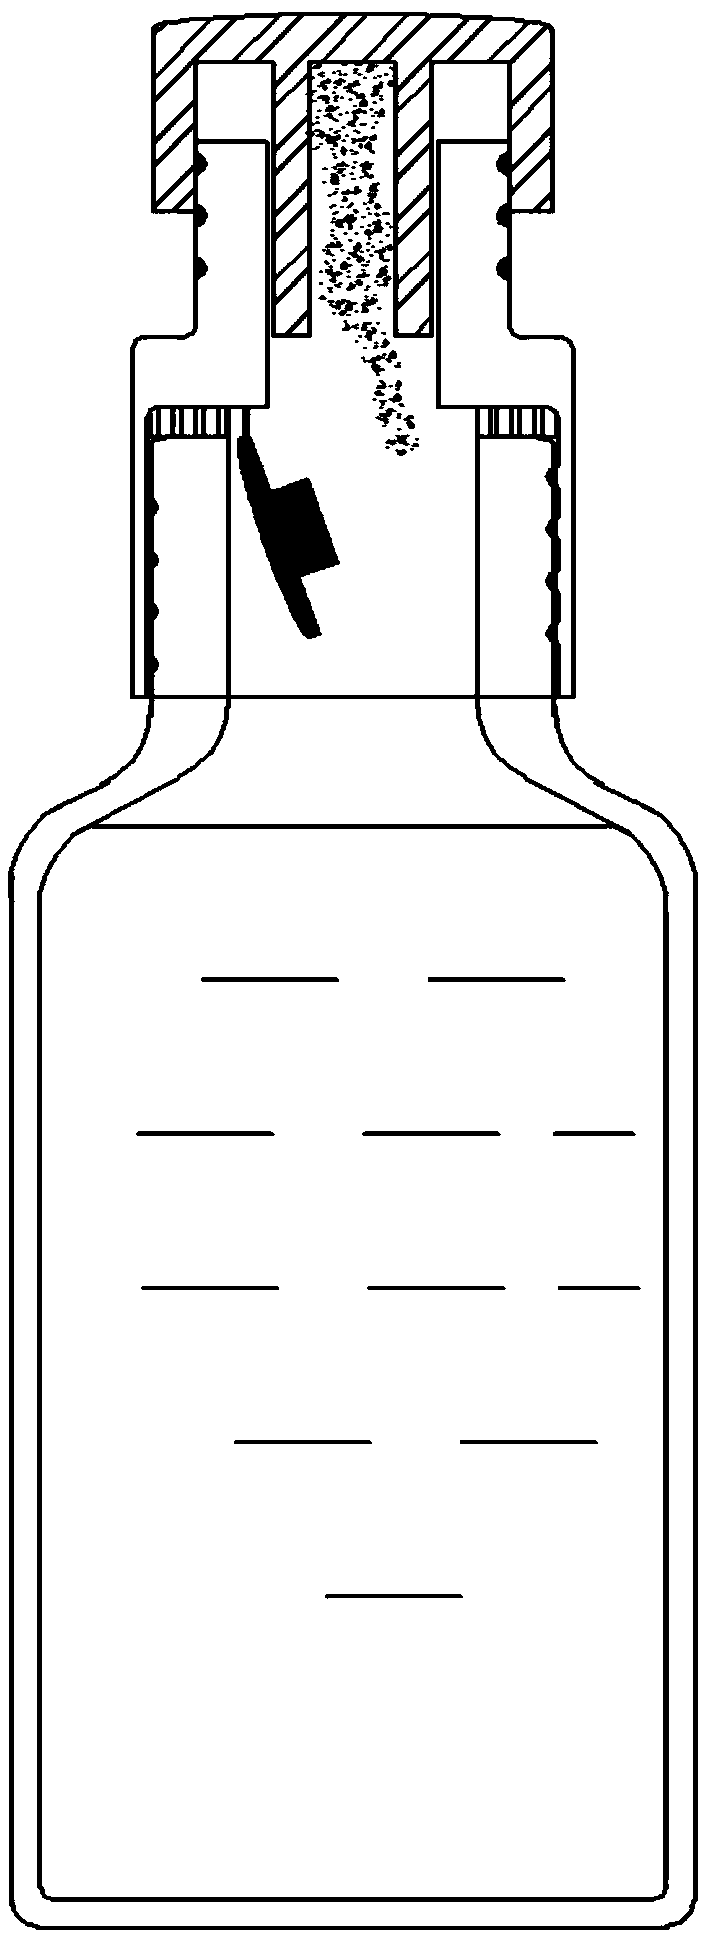 Solid-liquid split charging bottle